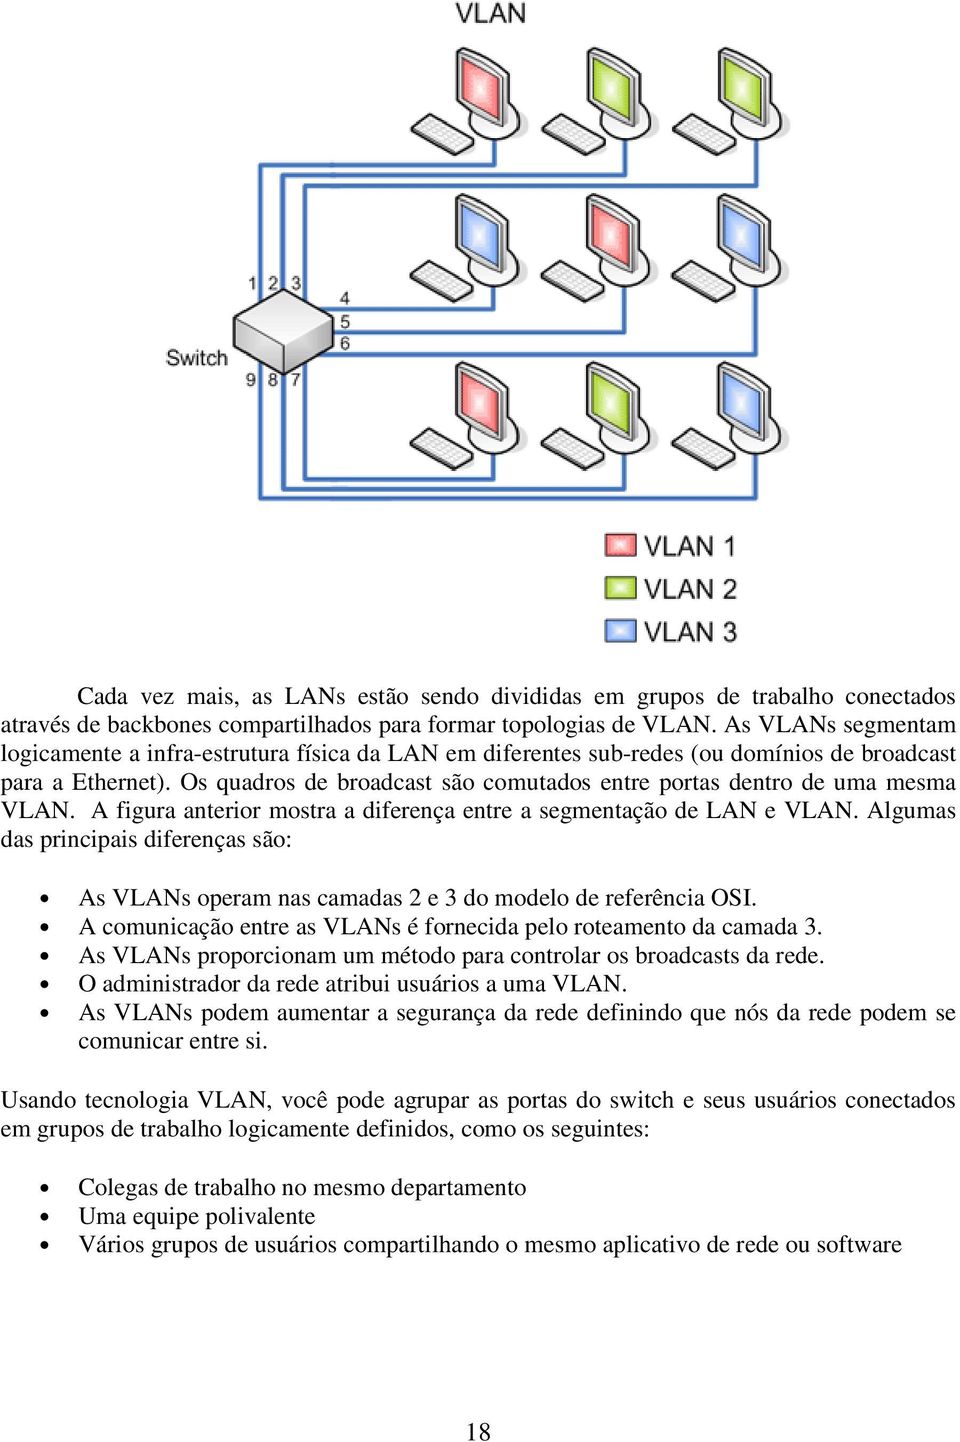 Os quadros de broadcast são comutados entre portas dentro de uma mesma VLAN. A figura anterior mostra a diferença entre a segmentação de LAN e VLAN.